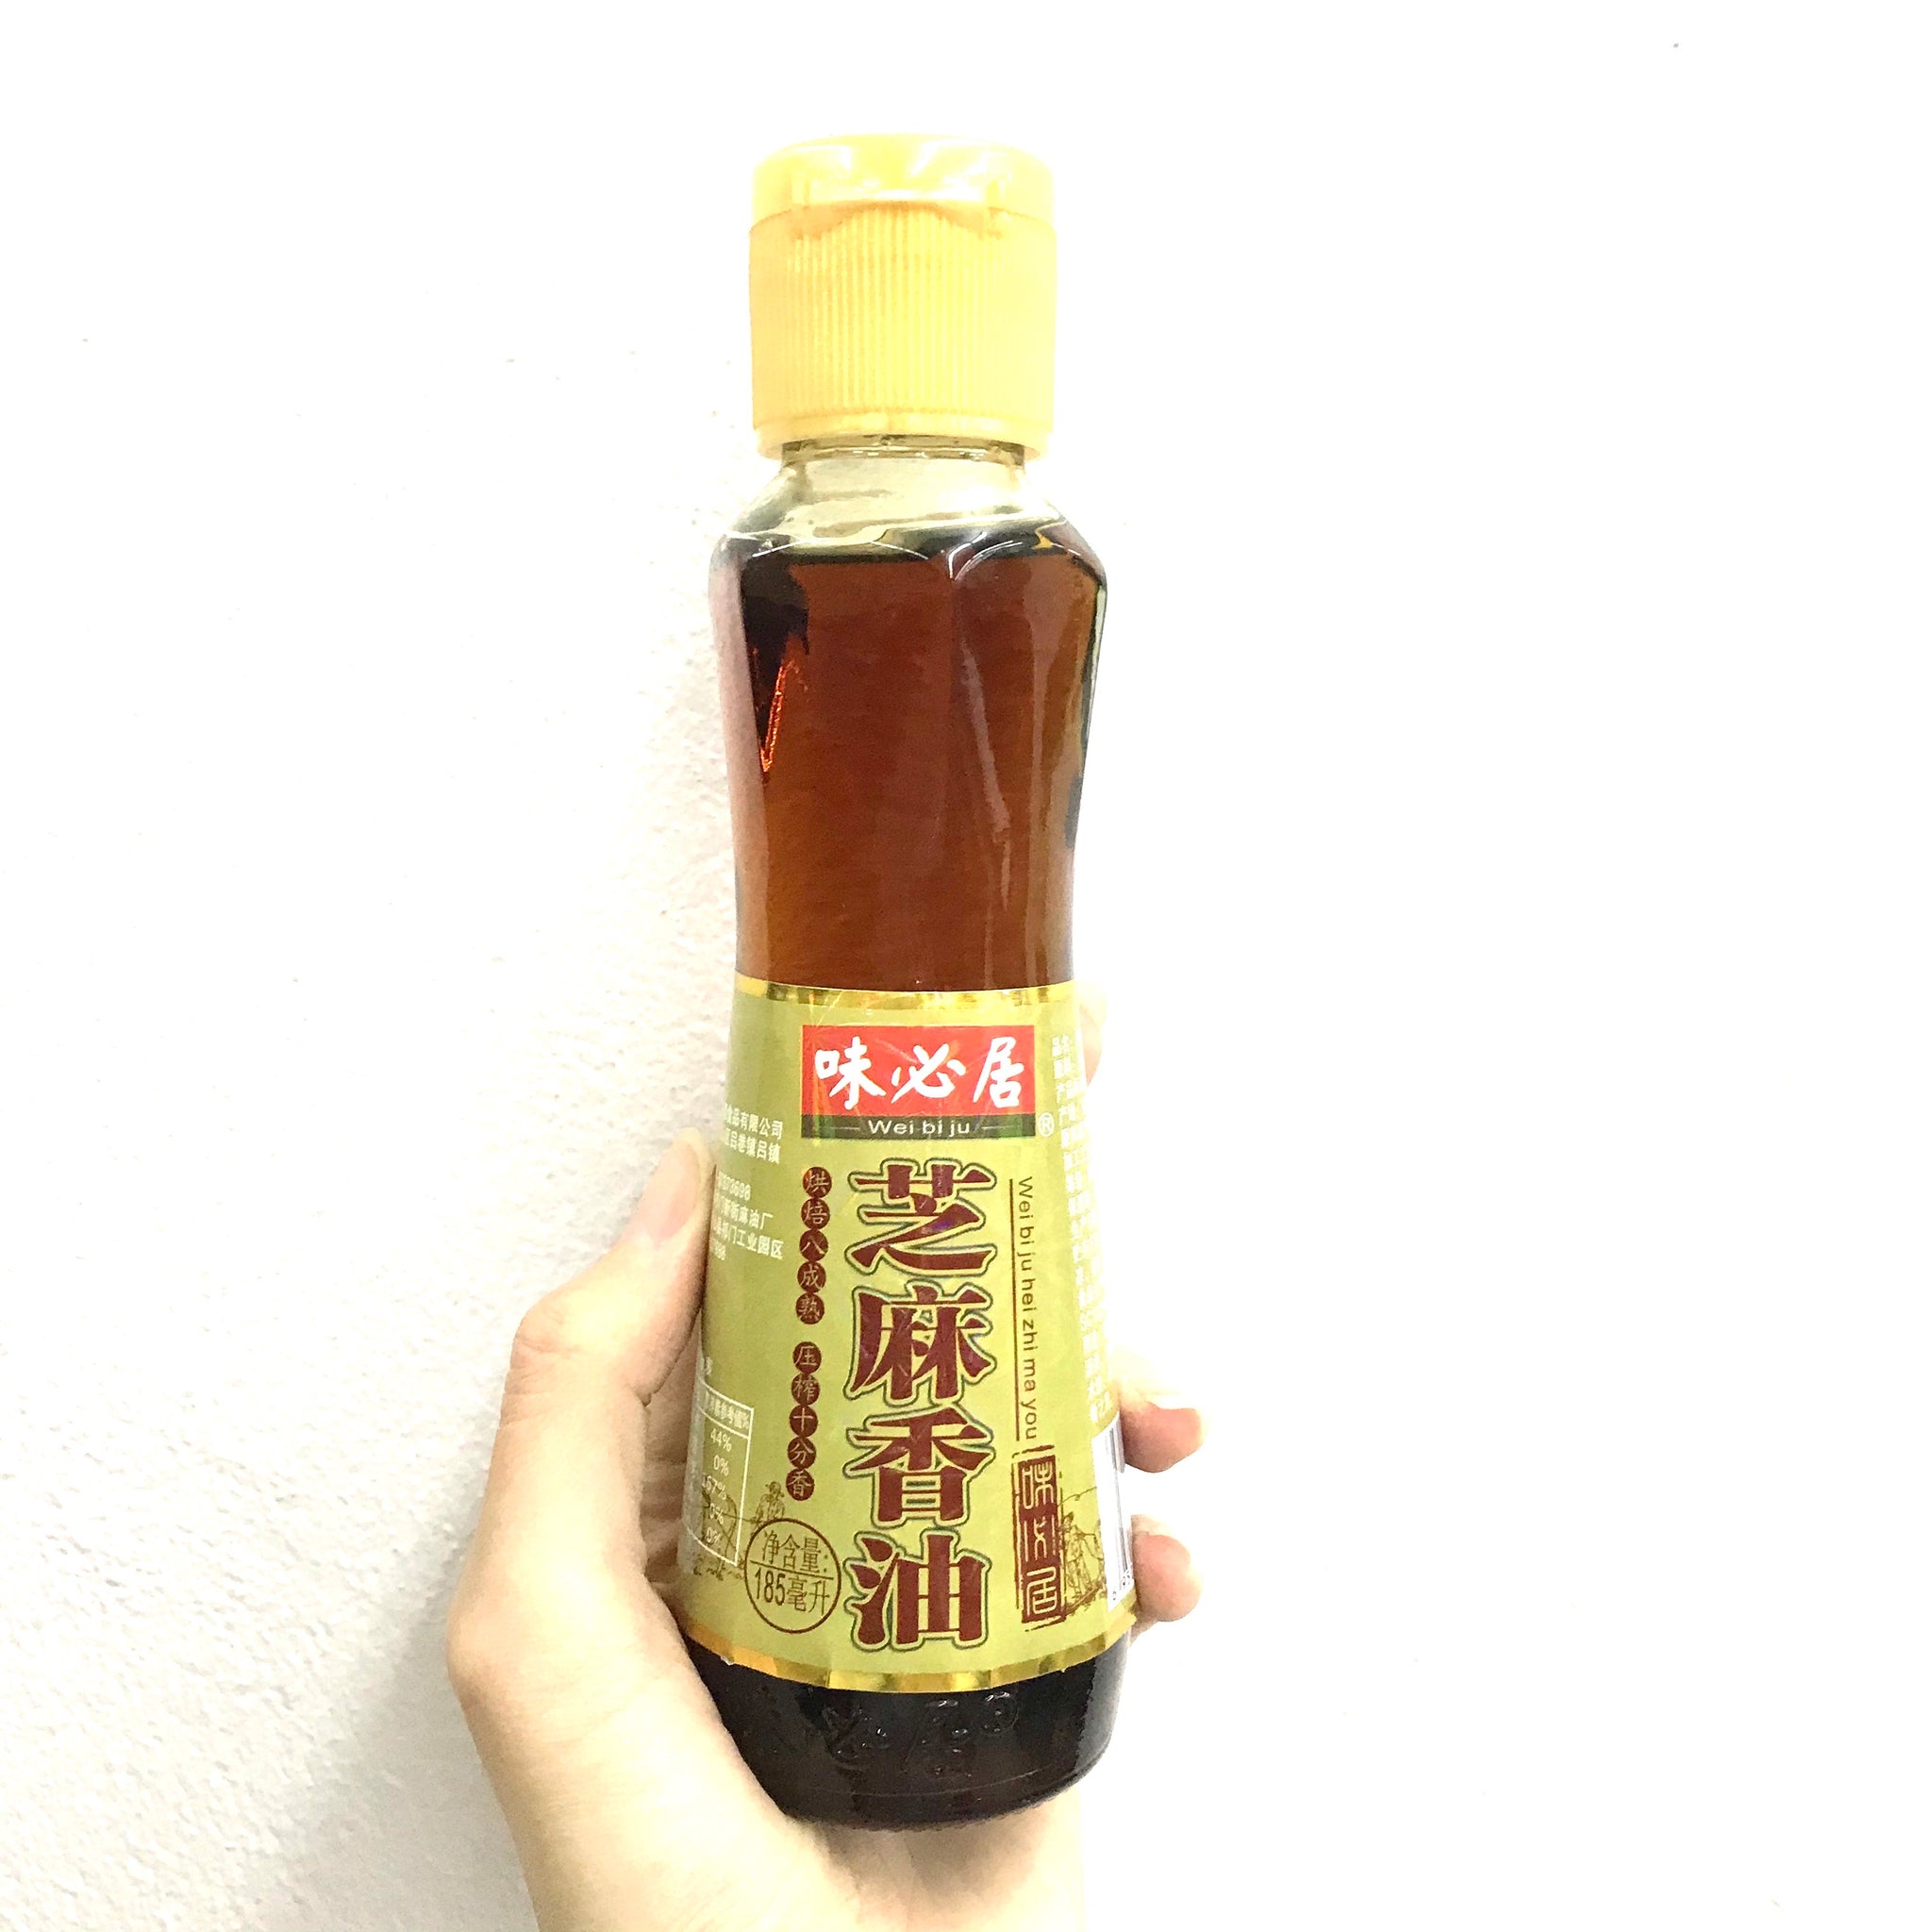 WEI BI JU White Sesami Oil 185ml